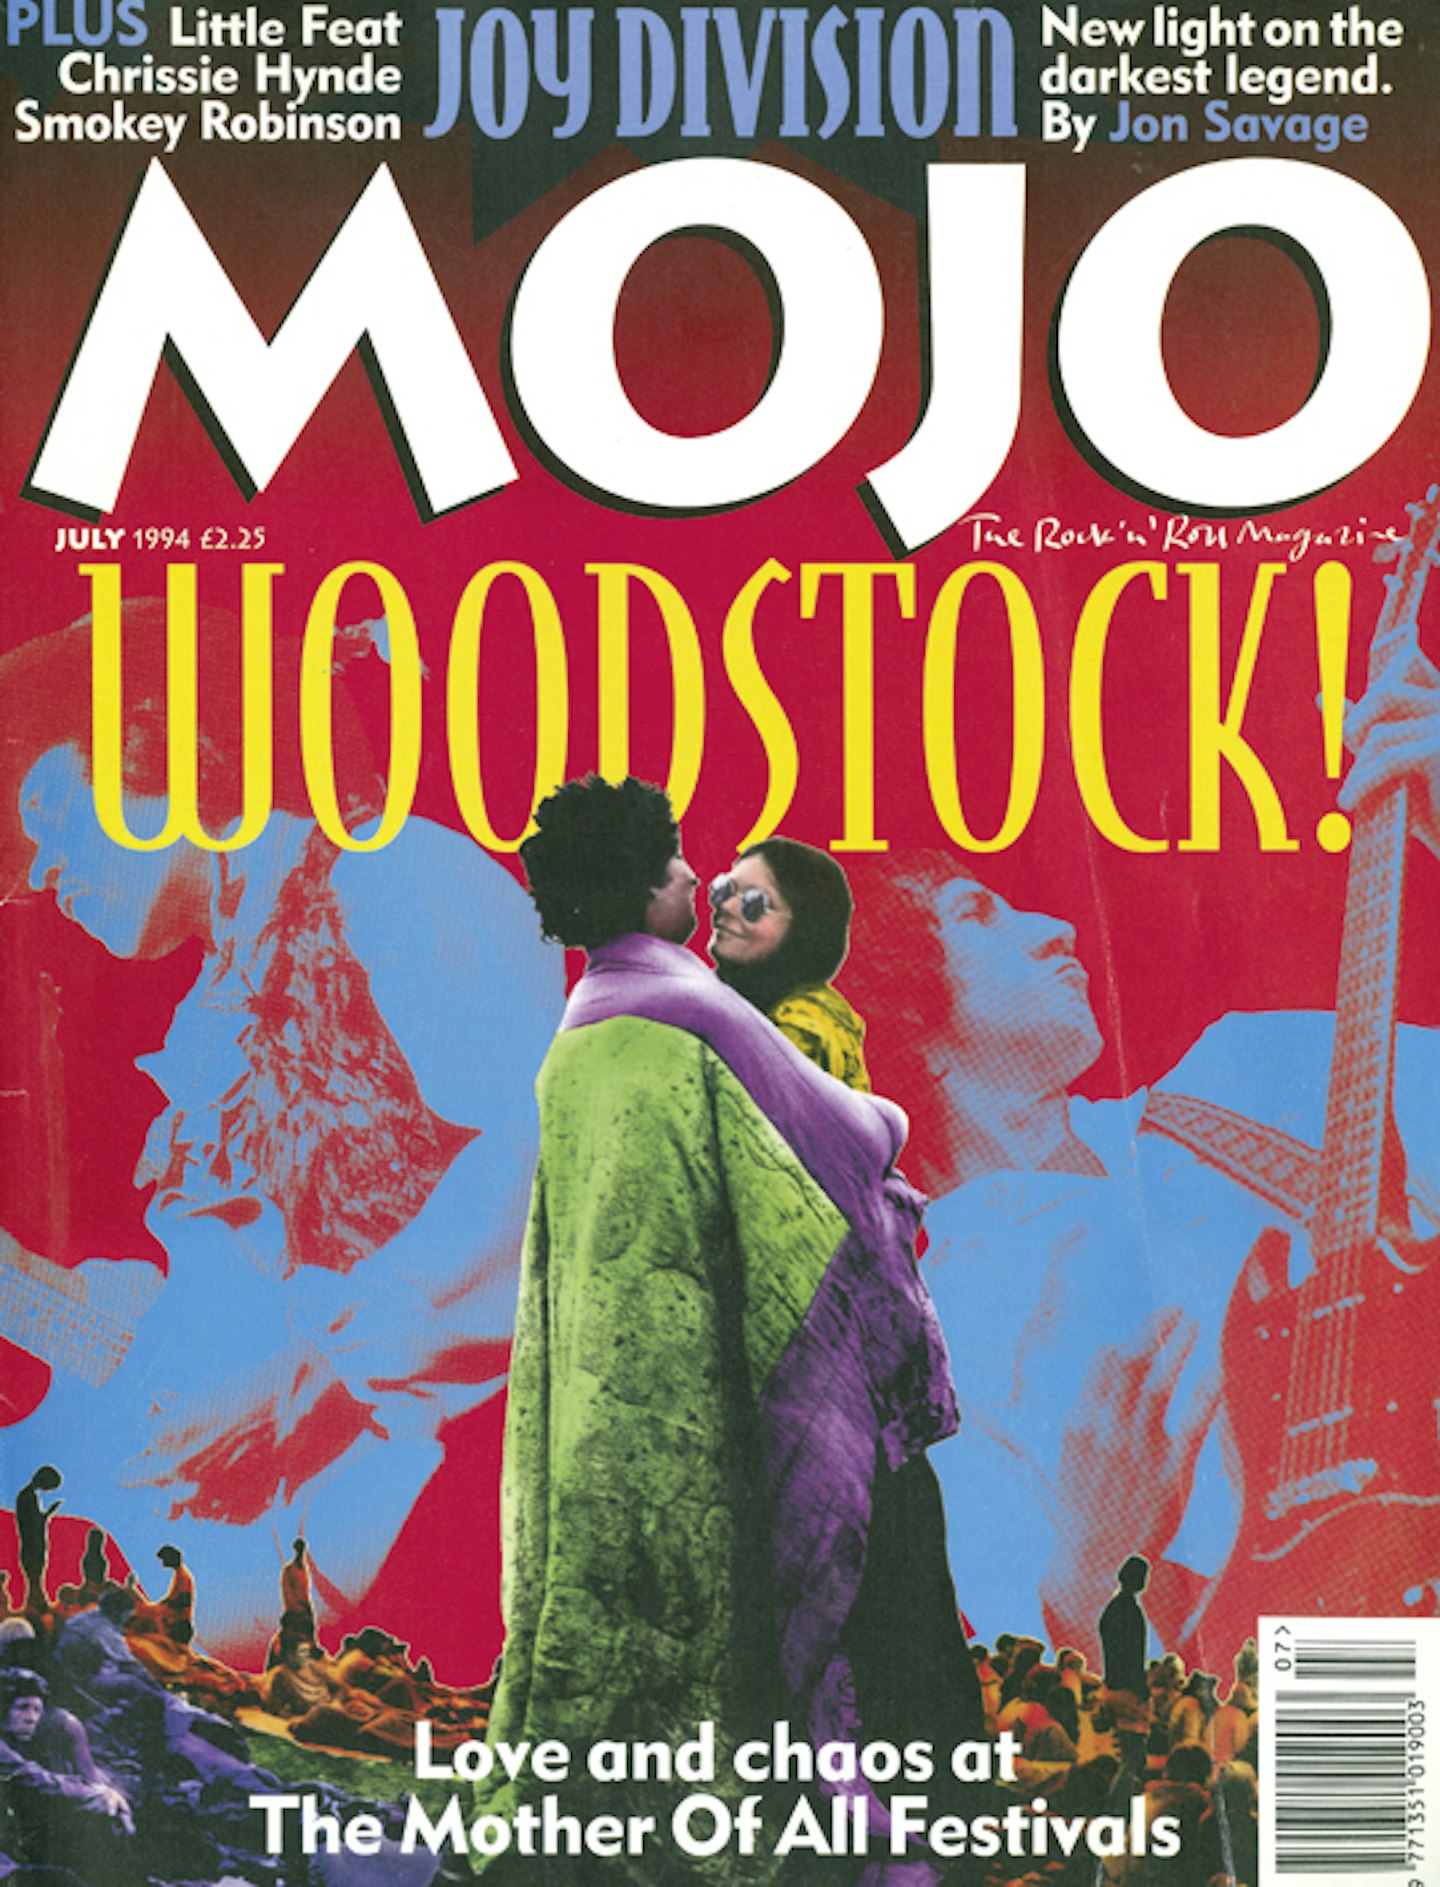 MOJO Issue 8 / July 1994